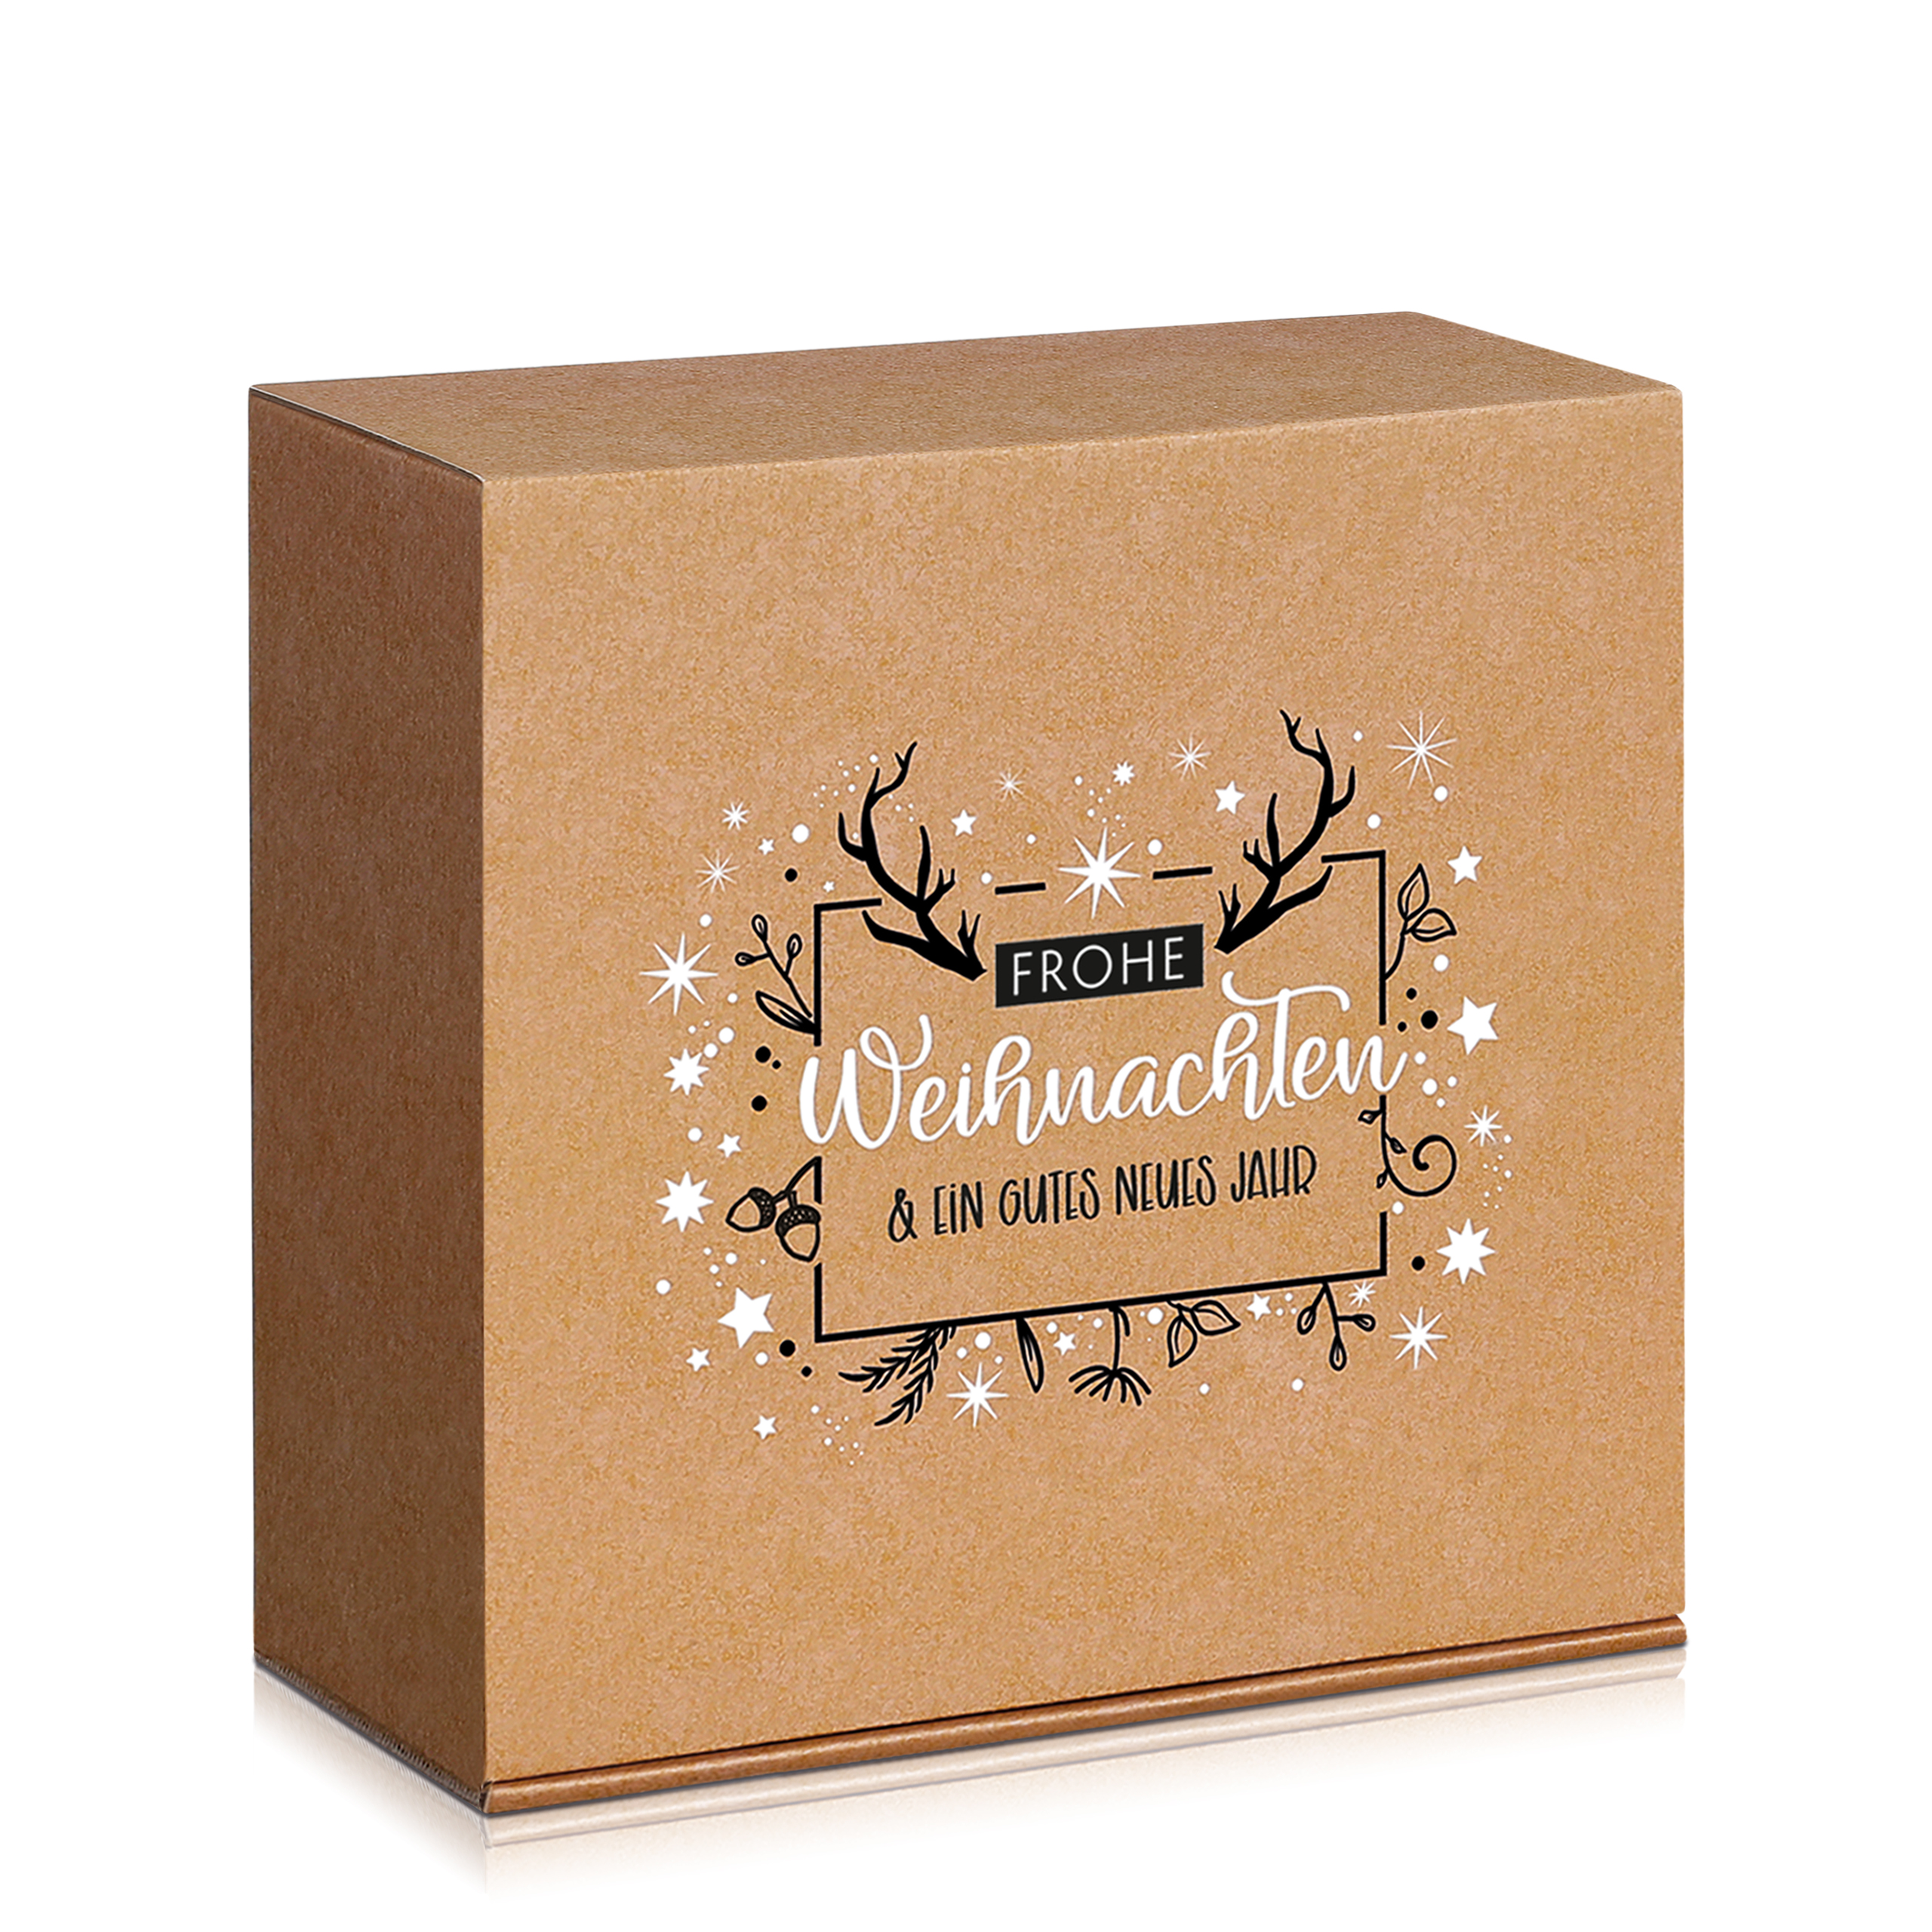 Kartonage mit silbernen und goldenen Sternen Geschenkbox Aufbewahrungsbox Karton